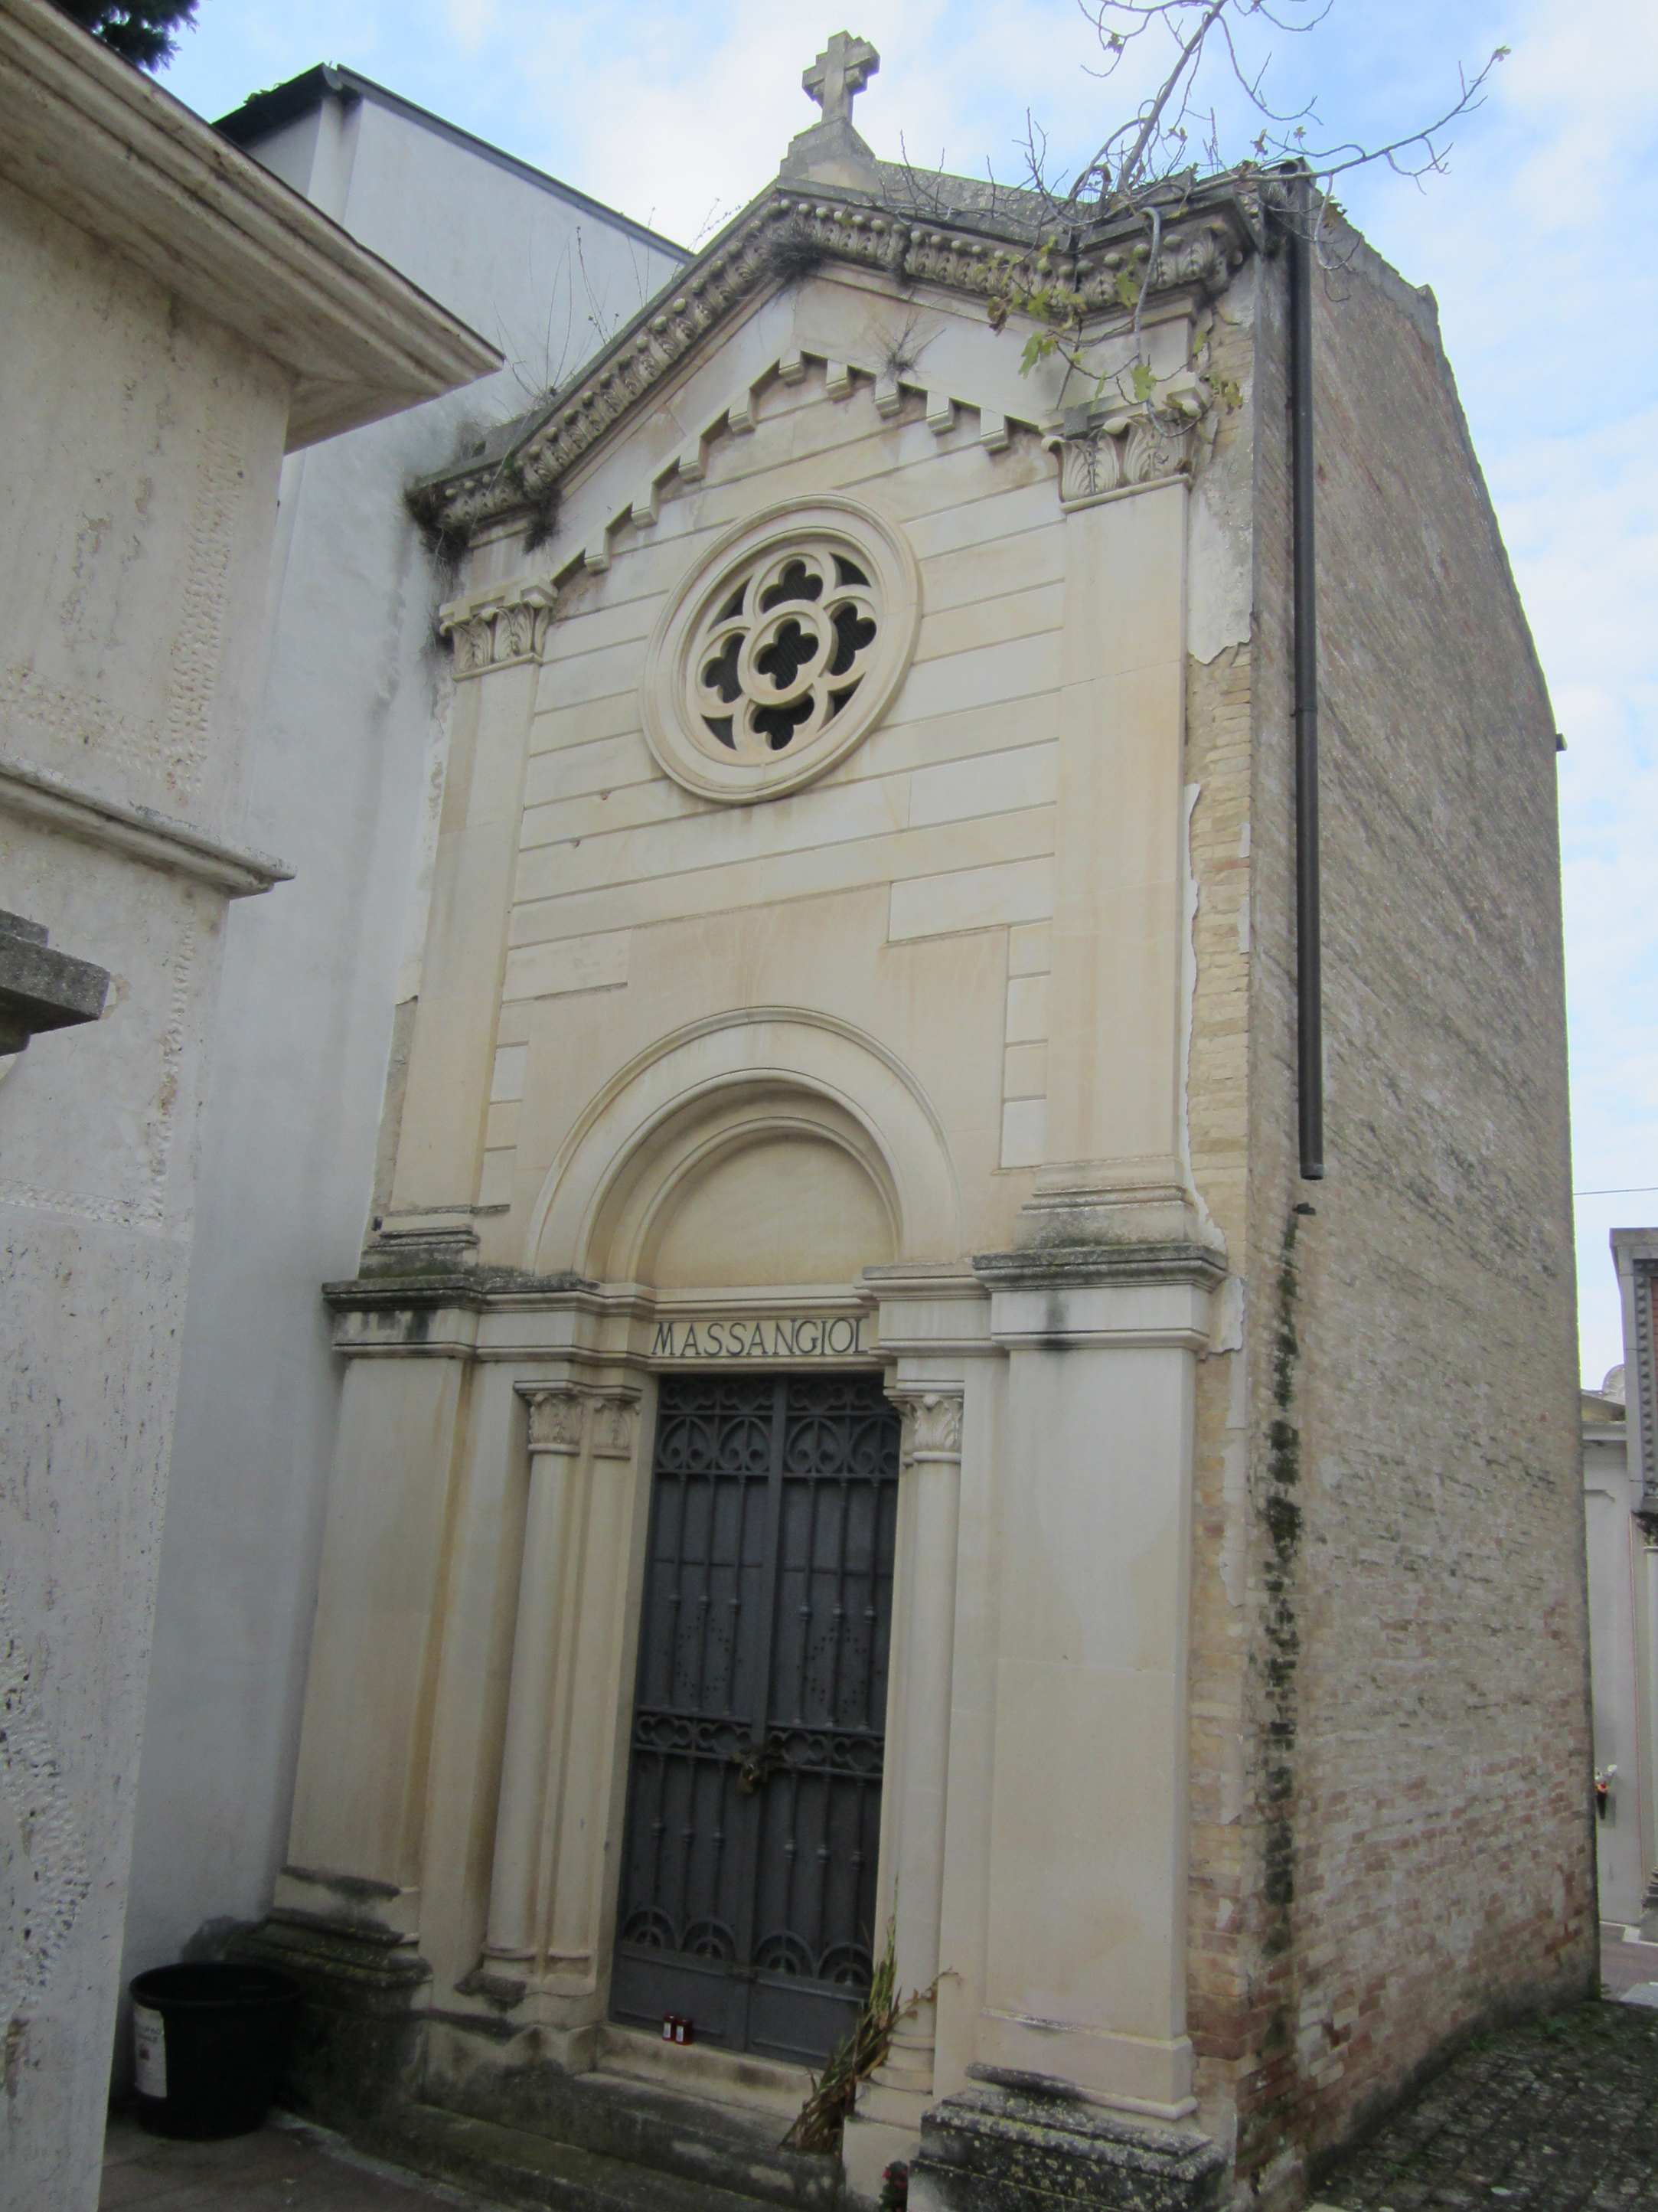 Cappella cimiteriale MASSANGIOLI (cimitero, monumentale) - Chieti (CH) 